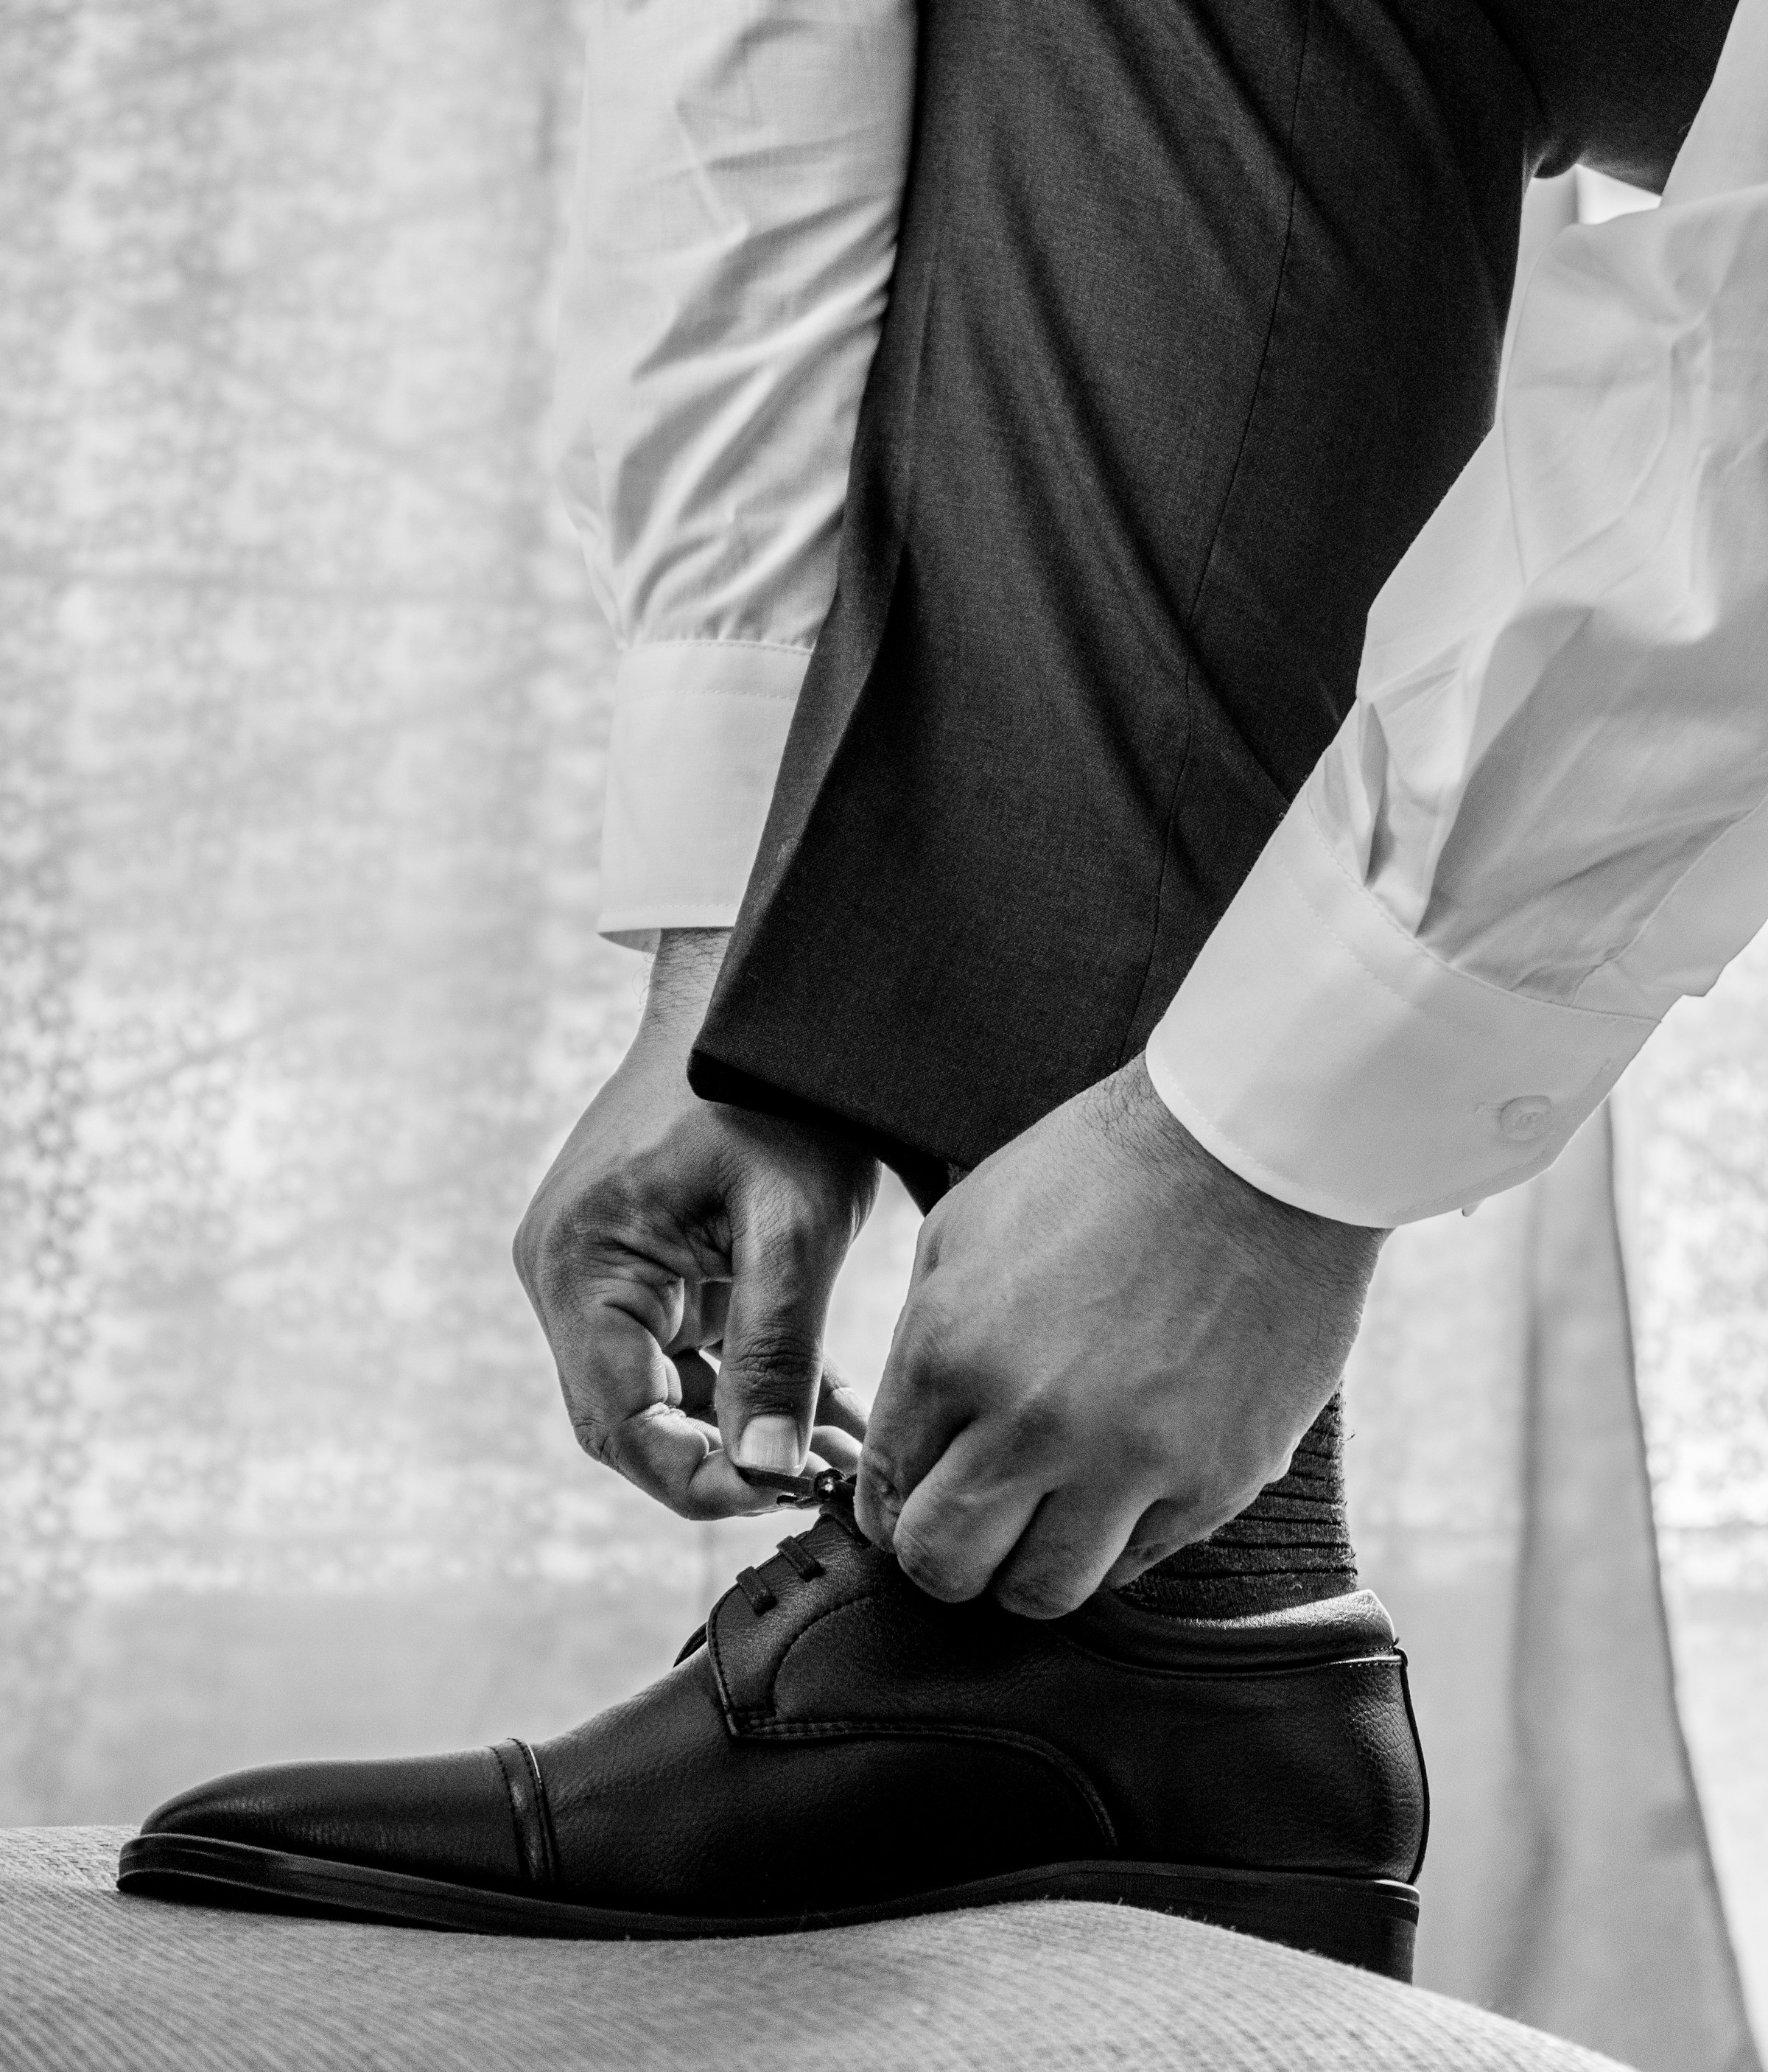 Primer plano extremo de un hombre con camisa de vestir blanca y pantalones negros que lleva zapatos de cuero negros | Fuente: Unsplash